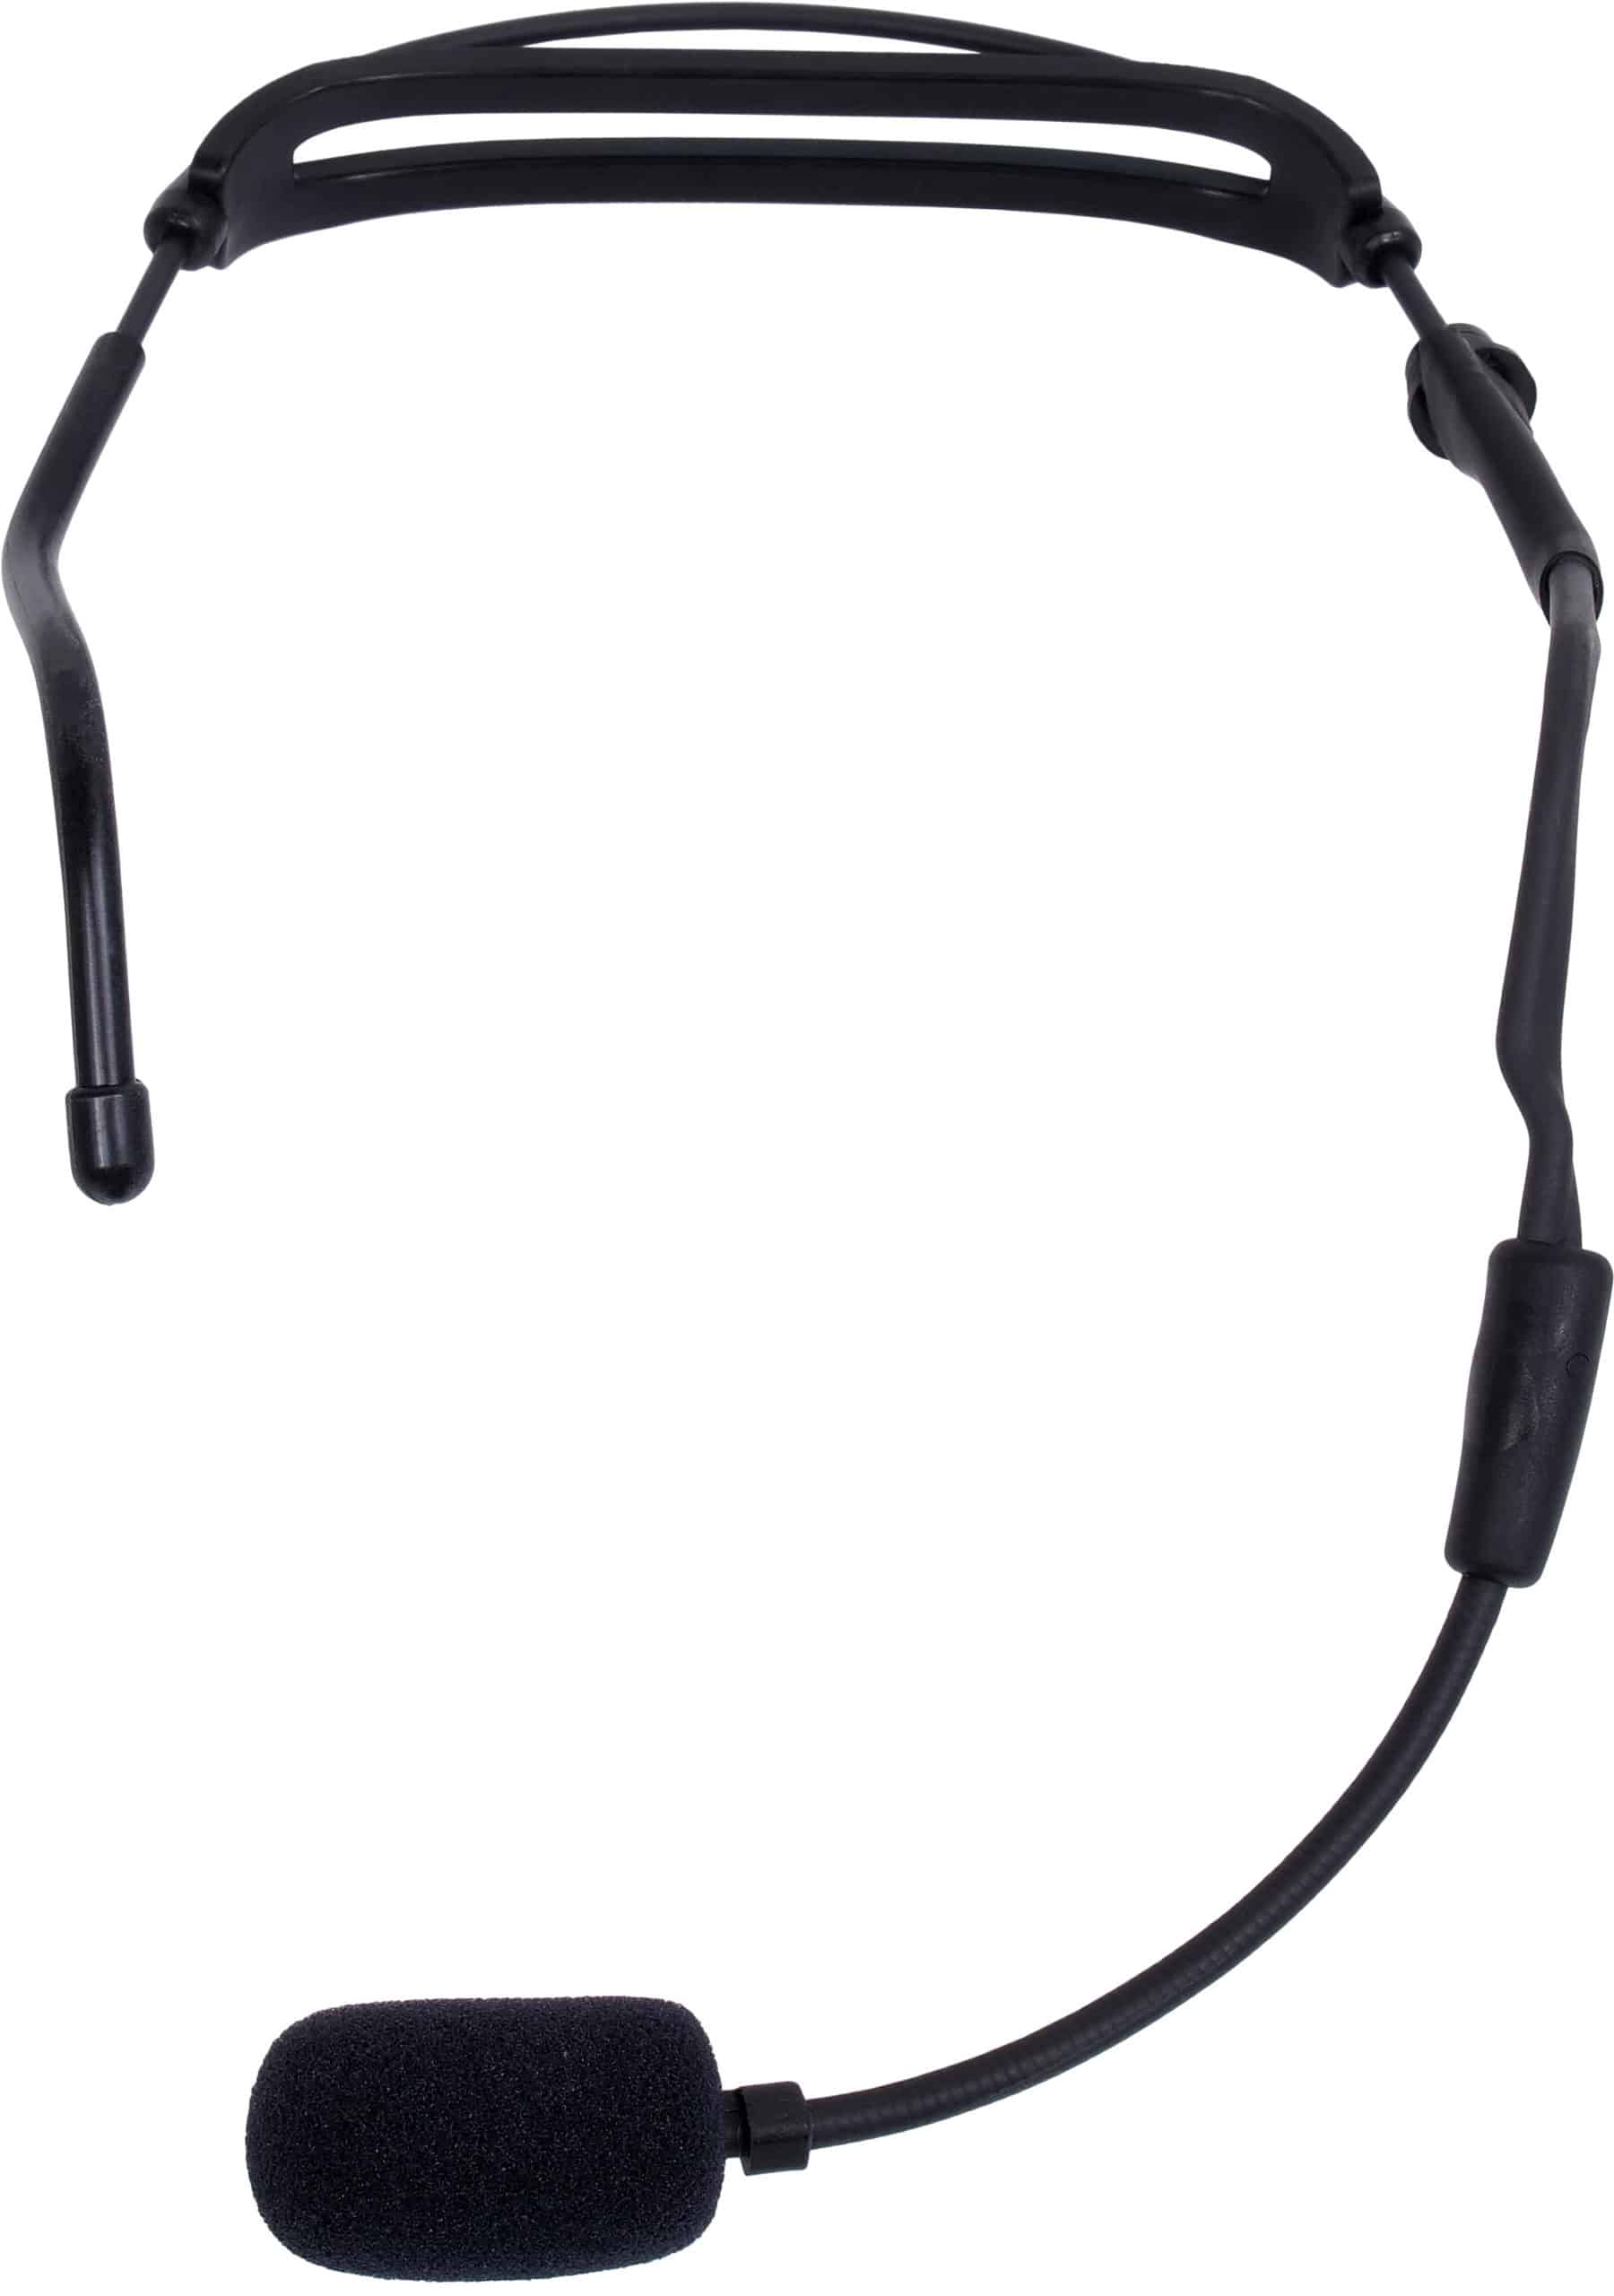 H2O7 HEAVY-DUTY Waterproof Fitness Dual Ear Headset Mic with 